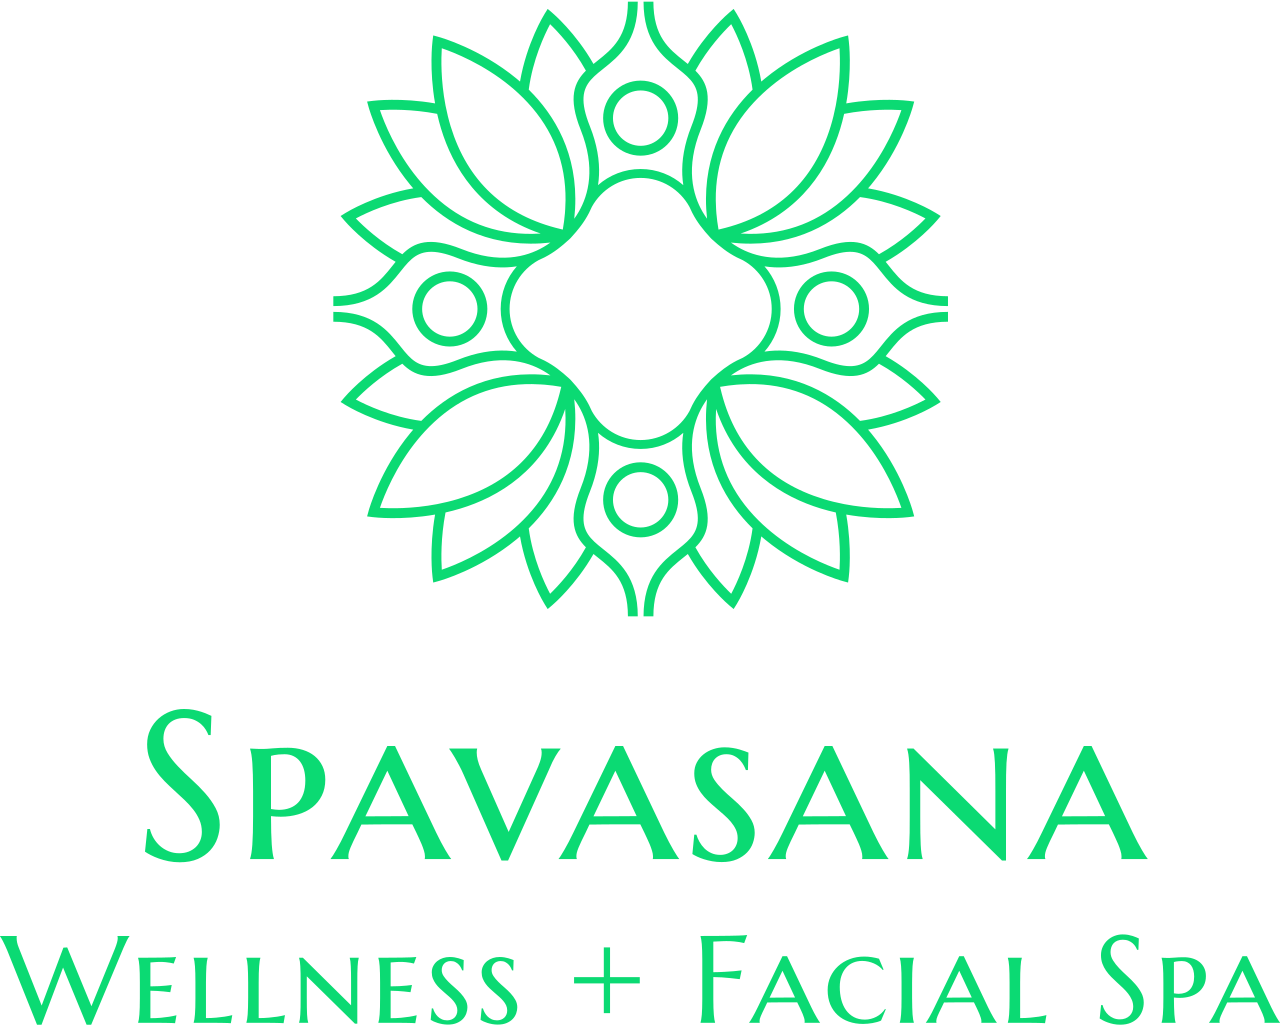 Spavasana's logo